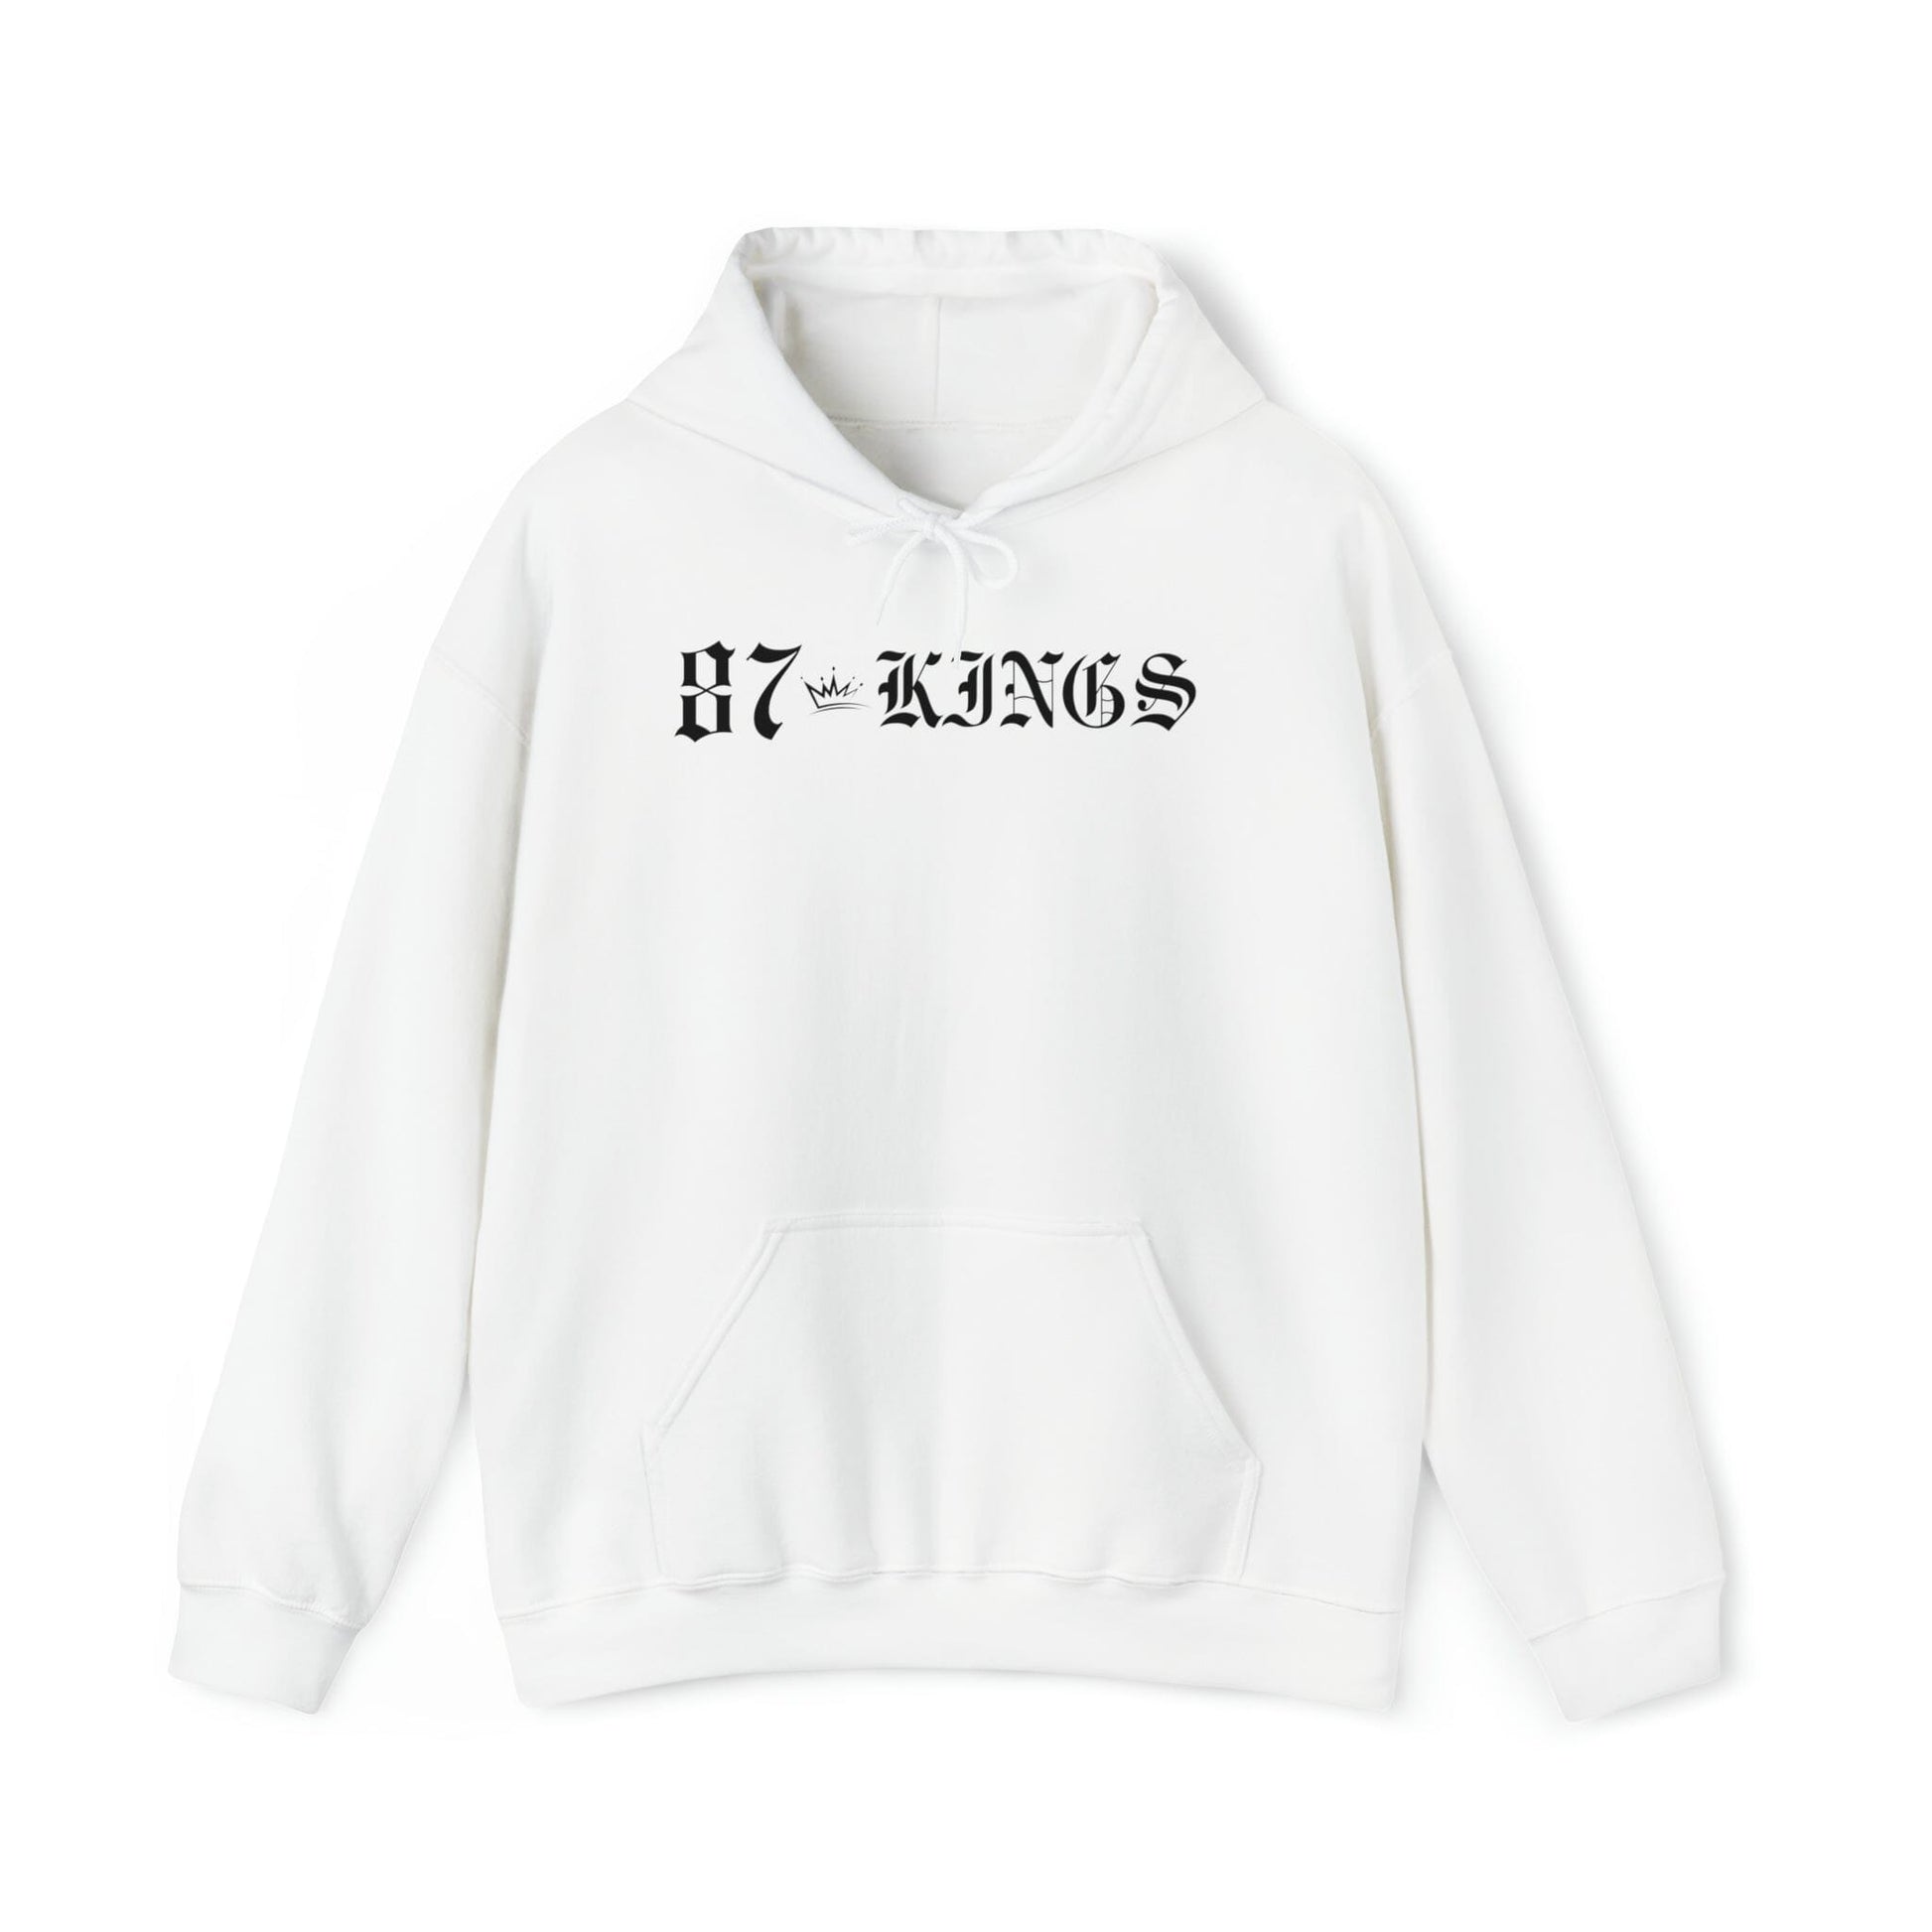 87 Kings Unisex Heavy Blend™ Hooded Sweatshirt Hoodie Printify White S 